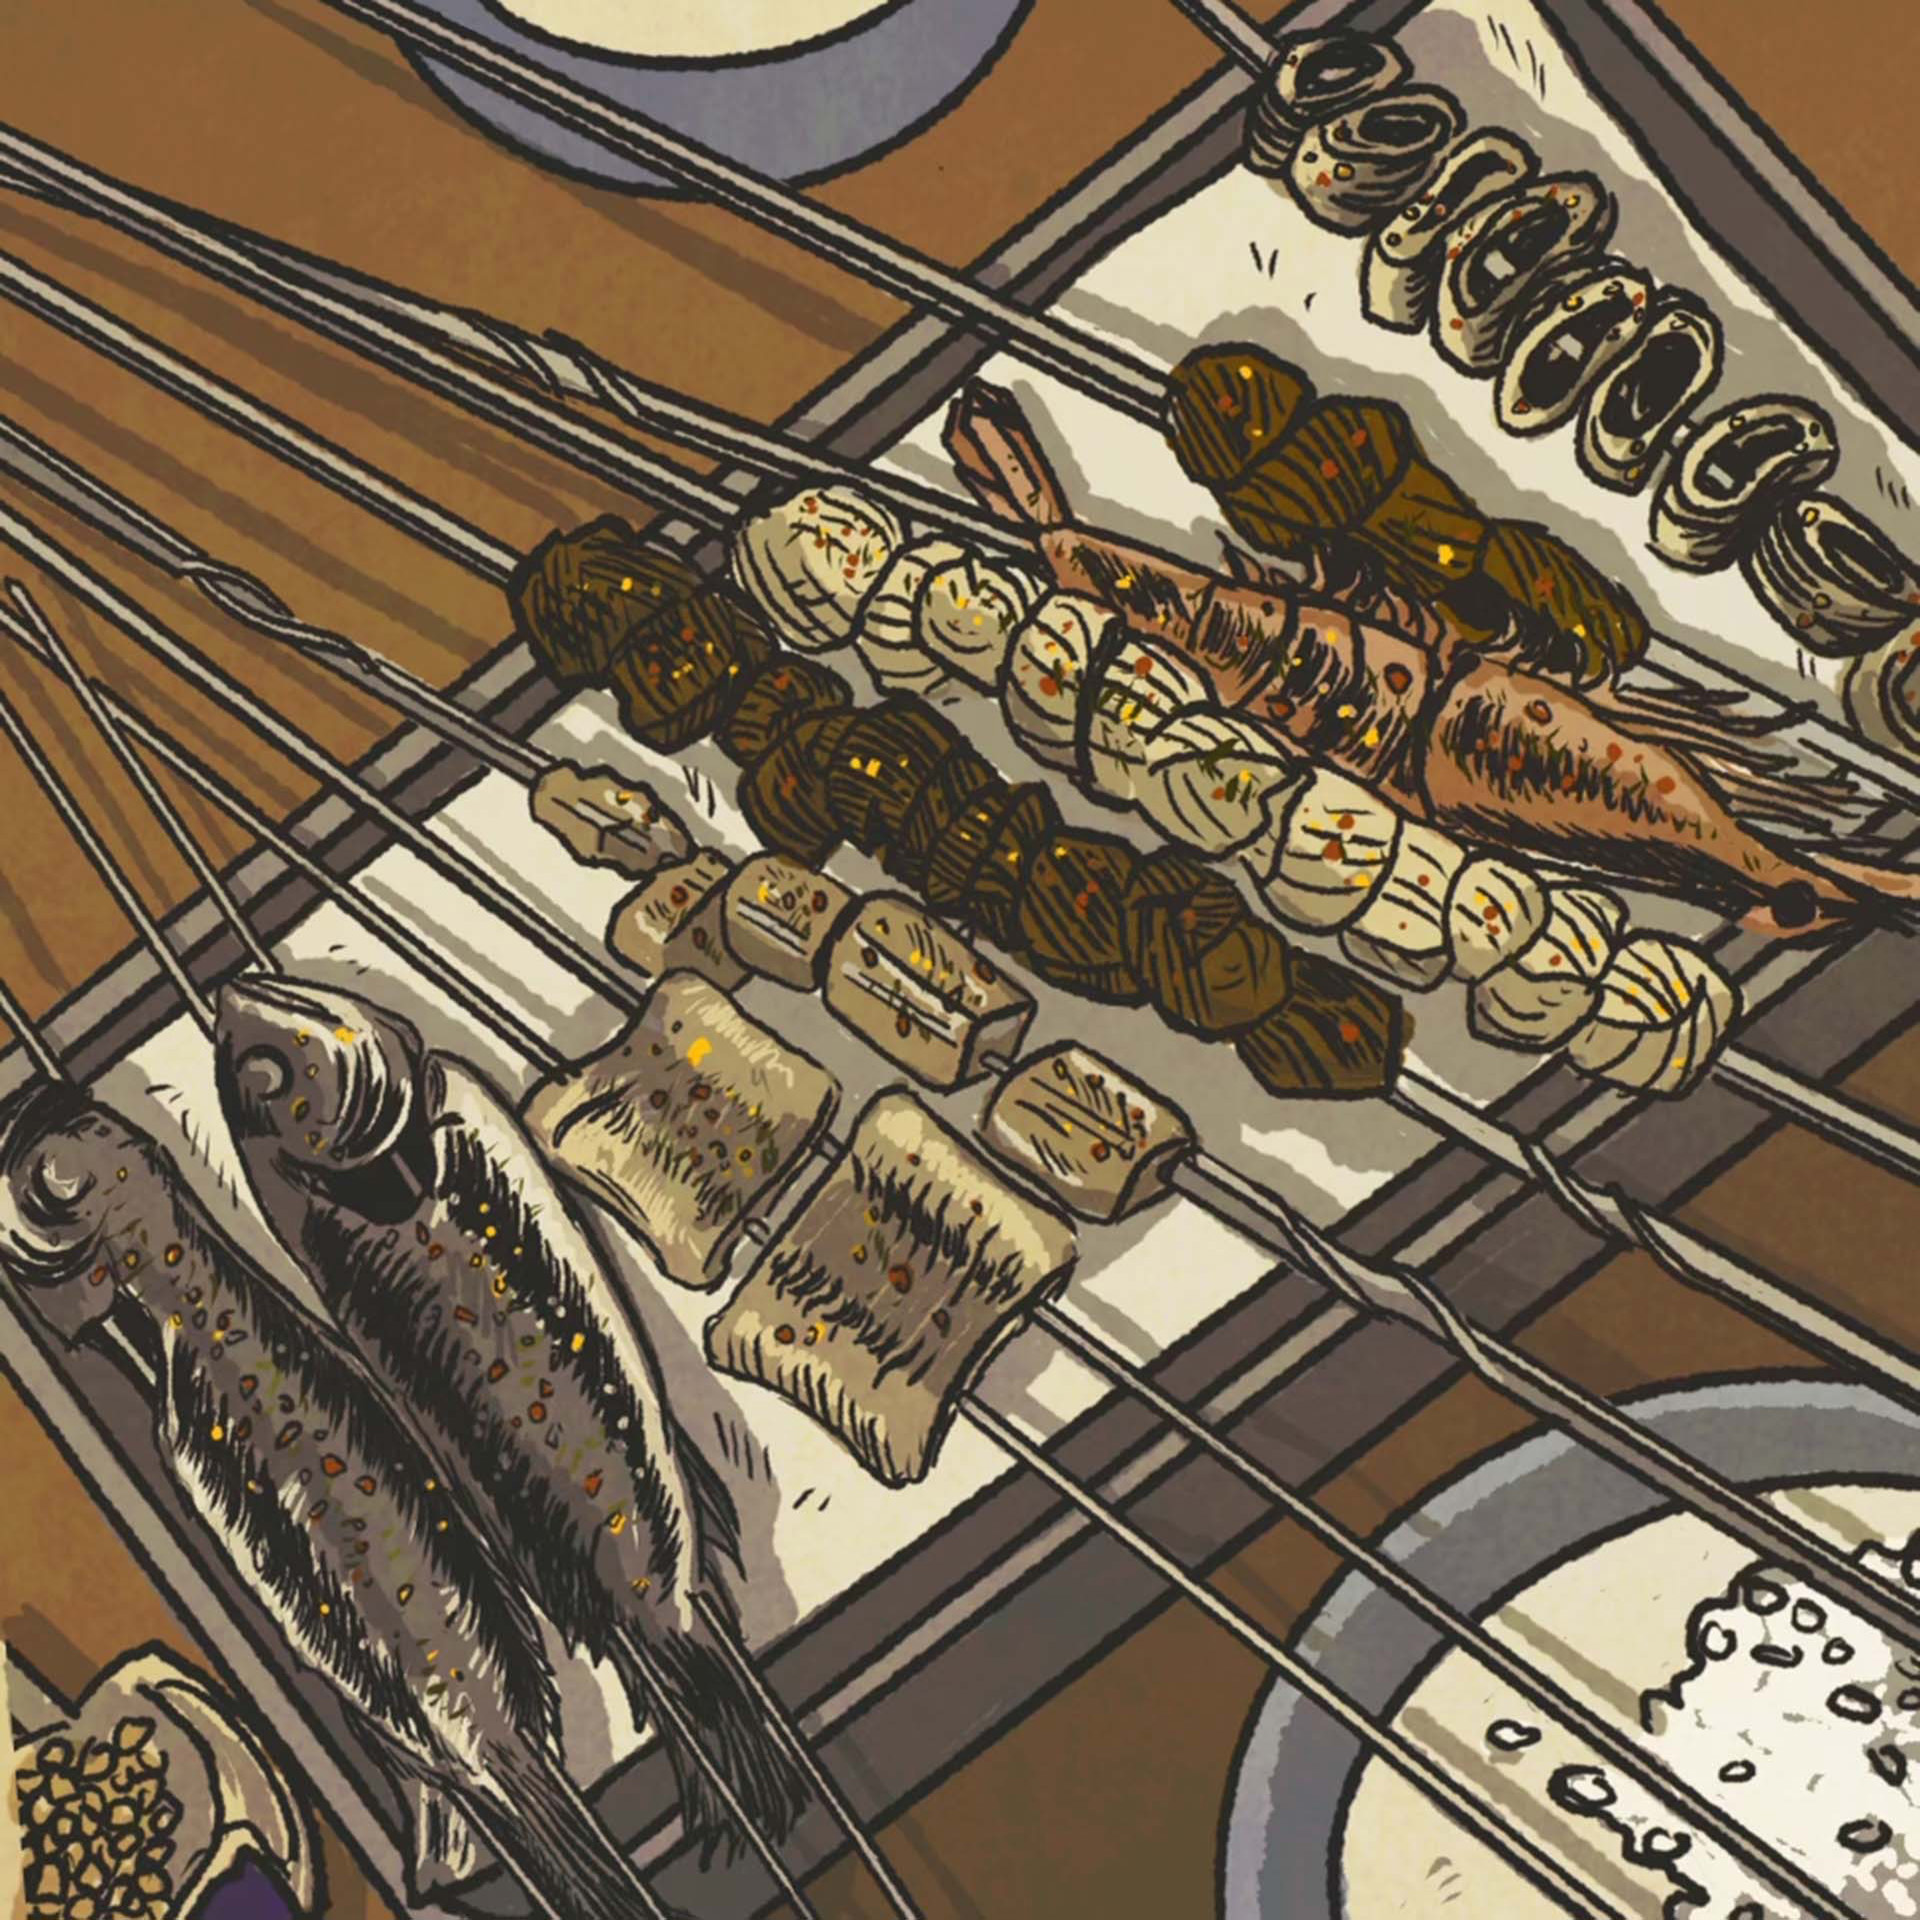 Un ejemplo de bandeja cuadrada china de carne a la parrilla, que incluye cordero y ternera estilo kebab, intestinos de cerdo, camarones enteros y pescado entero.